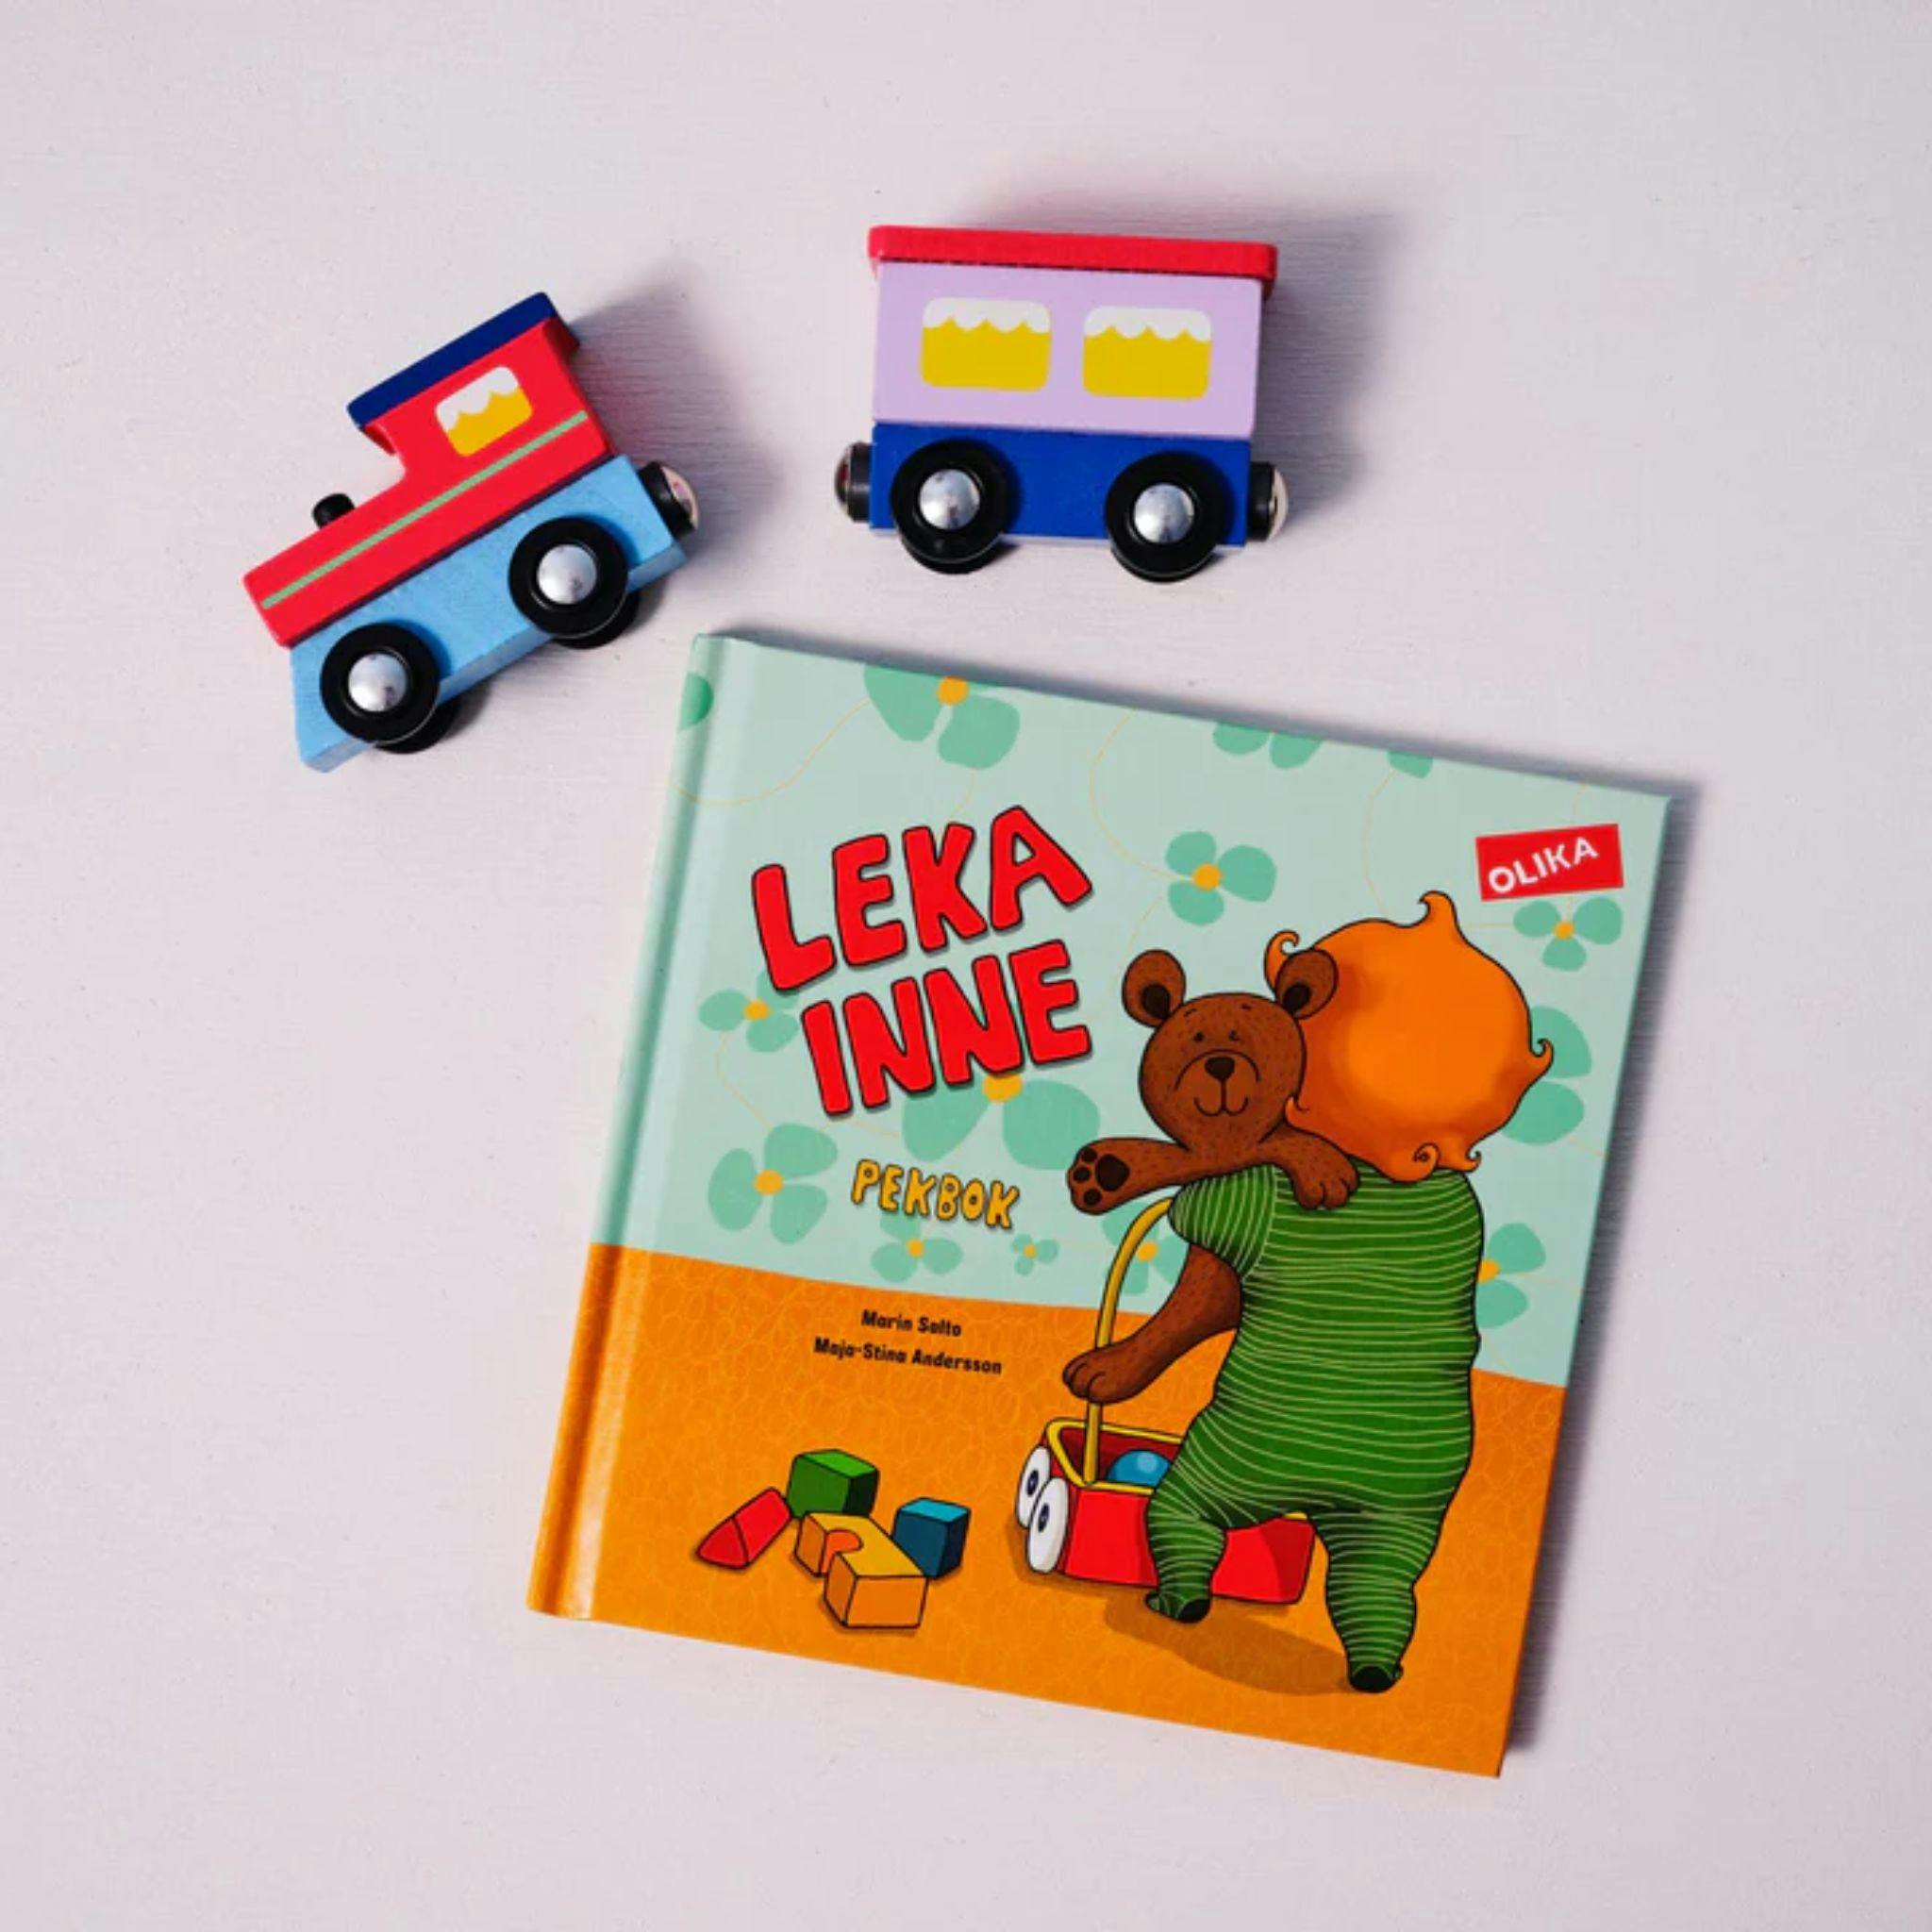 En fin bok för barn ålder 0-2år från Olika förlag leka inne.